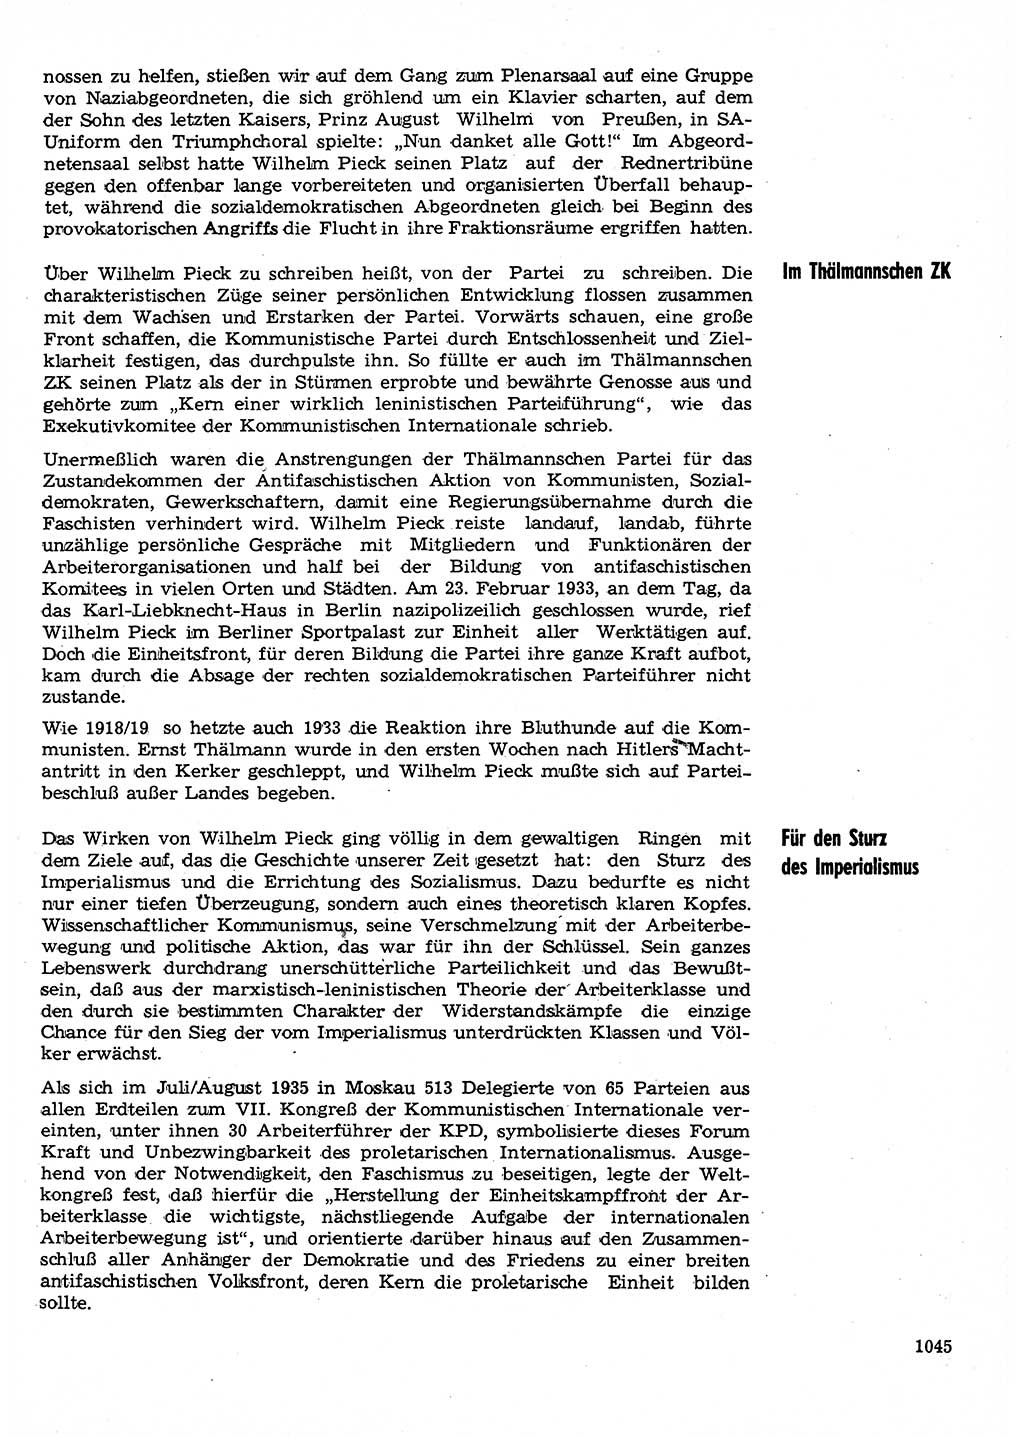 Neuer Weg (NW), Organ des Zentralkomitees (ZK) der SED (Sozialistische Einheitspartei Deutschlands) für Fragen des Parteilebens, 30. Jahrgang [Deutsche Demokratische Republik (DDR)] 1975, Seite 1045 (NW ZK SED DDR 1975, S. 1045)